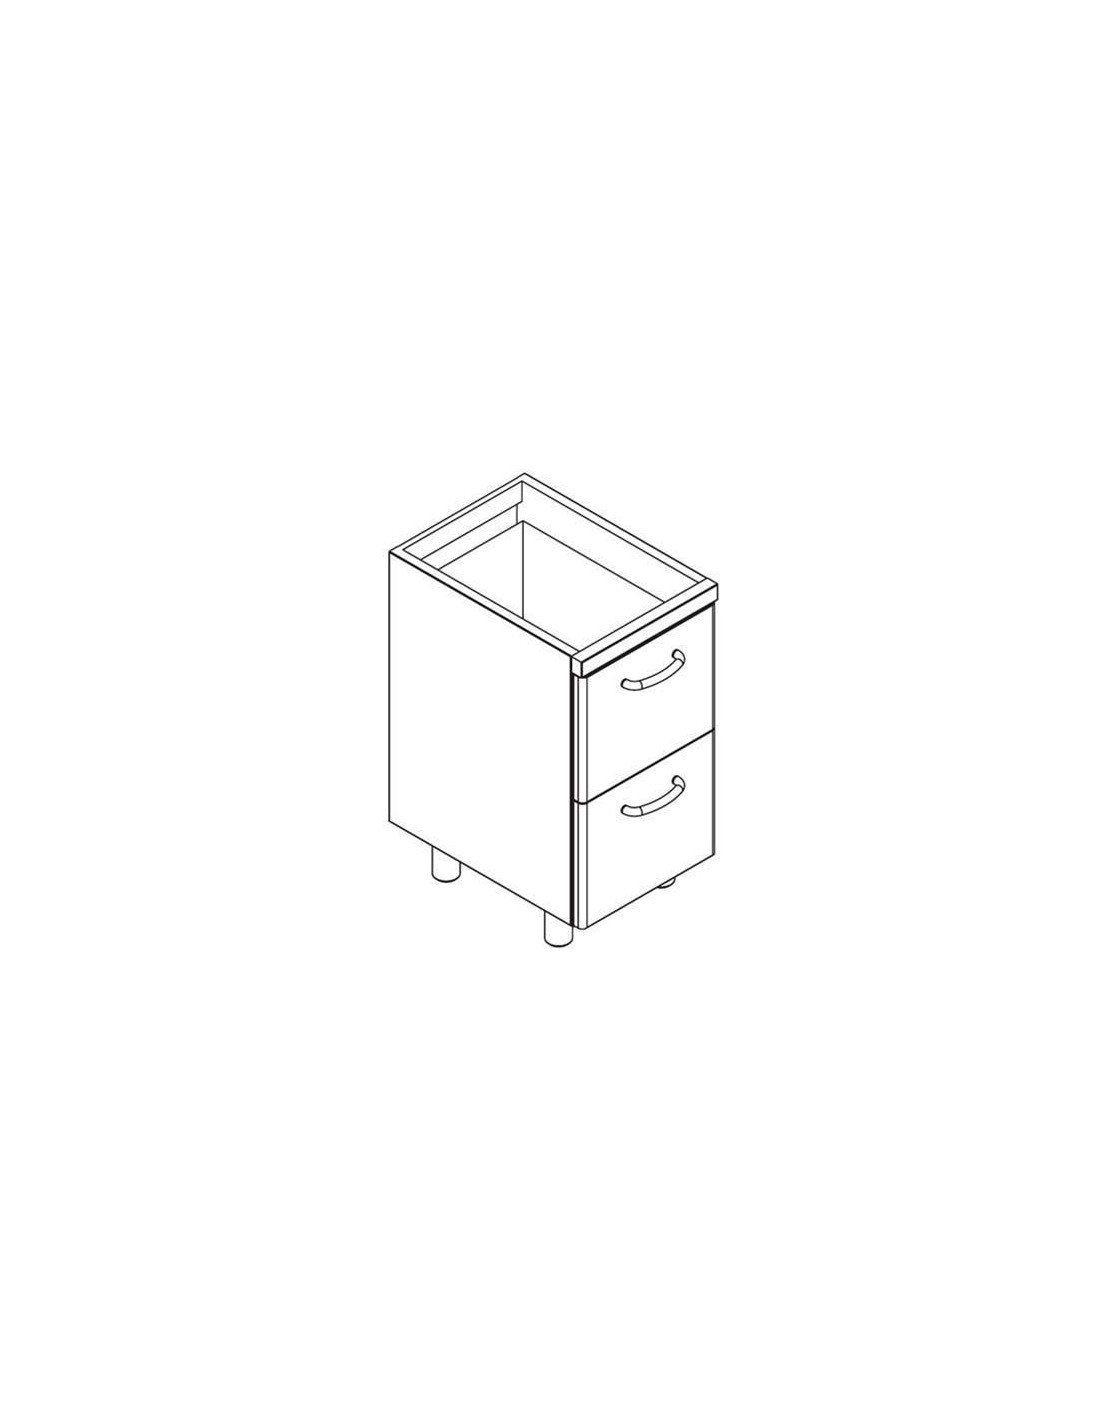 Base cabinet - No. 2 drawers cm 31.8 x 52 x 25 H - Size cm 40 x 56,6 x 79 H